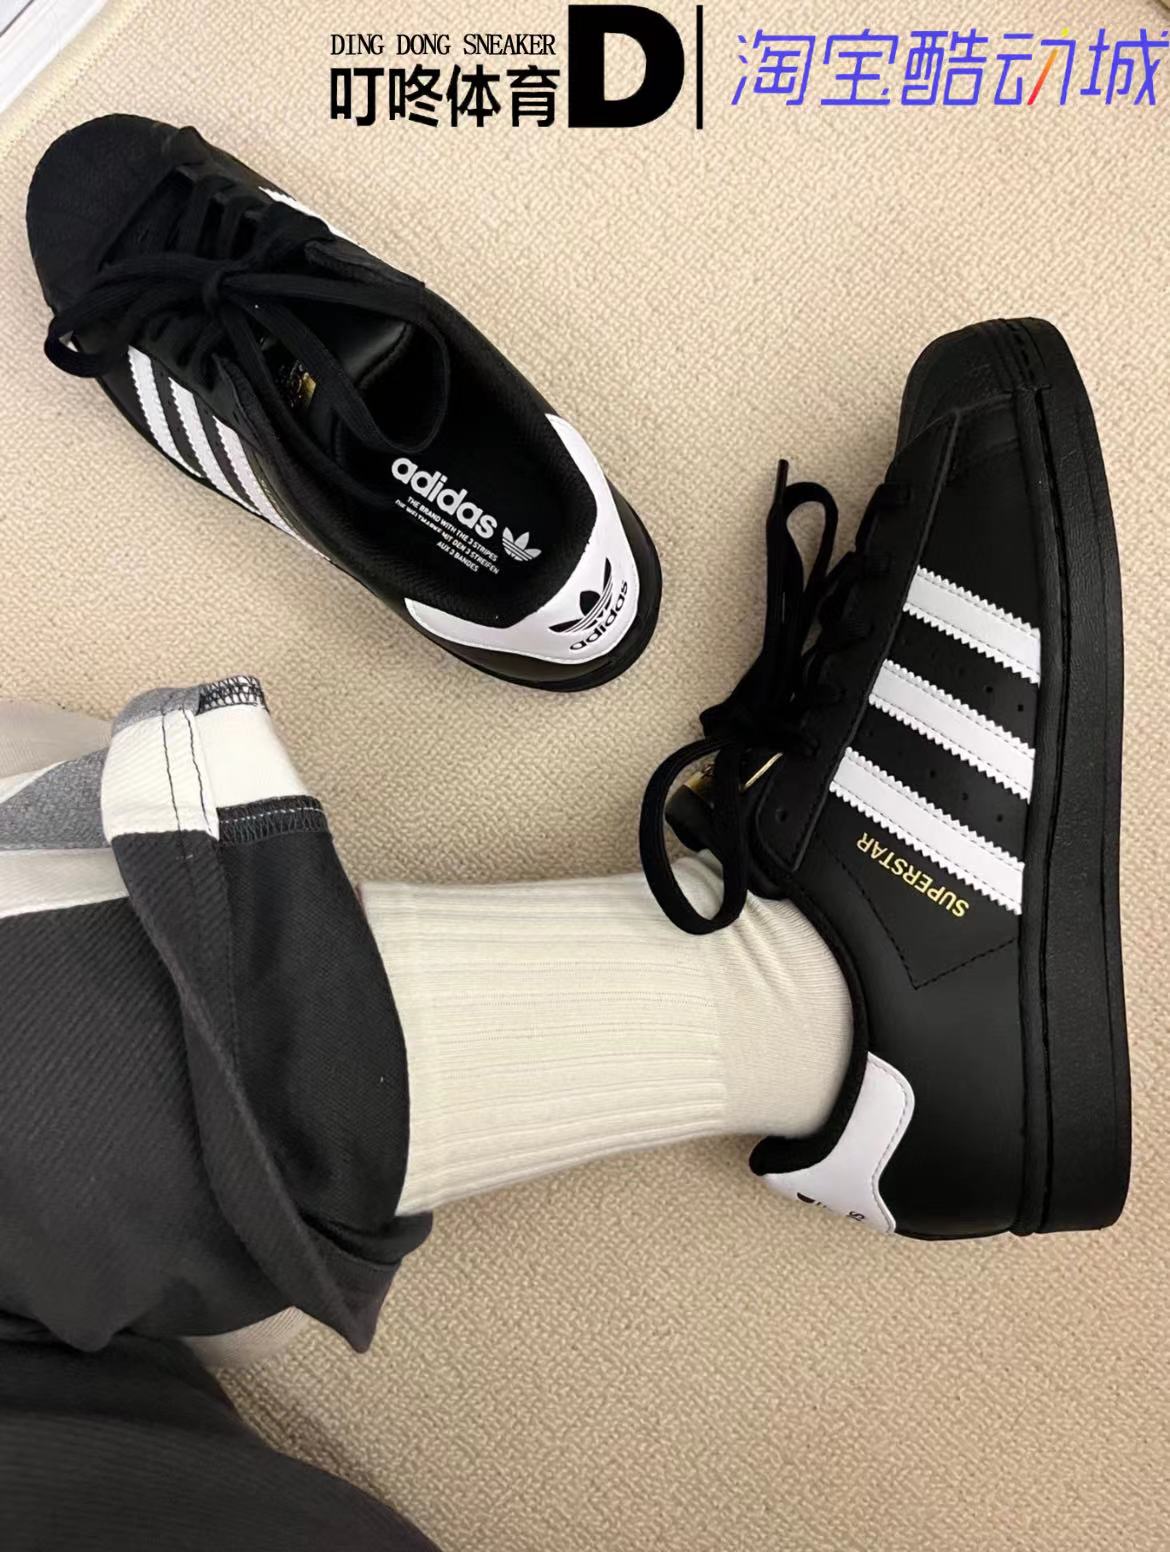 叮咚体育 Adidas Superstar 阿迪达斯三叶草 黑贝壳头板鞋 EG4959 运动鞋new 板鞋 原图主图